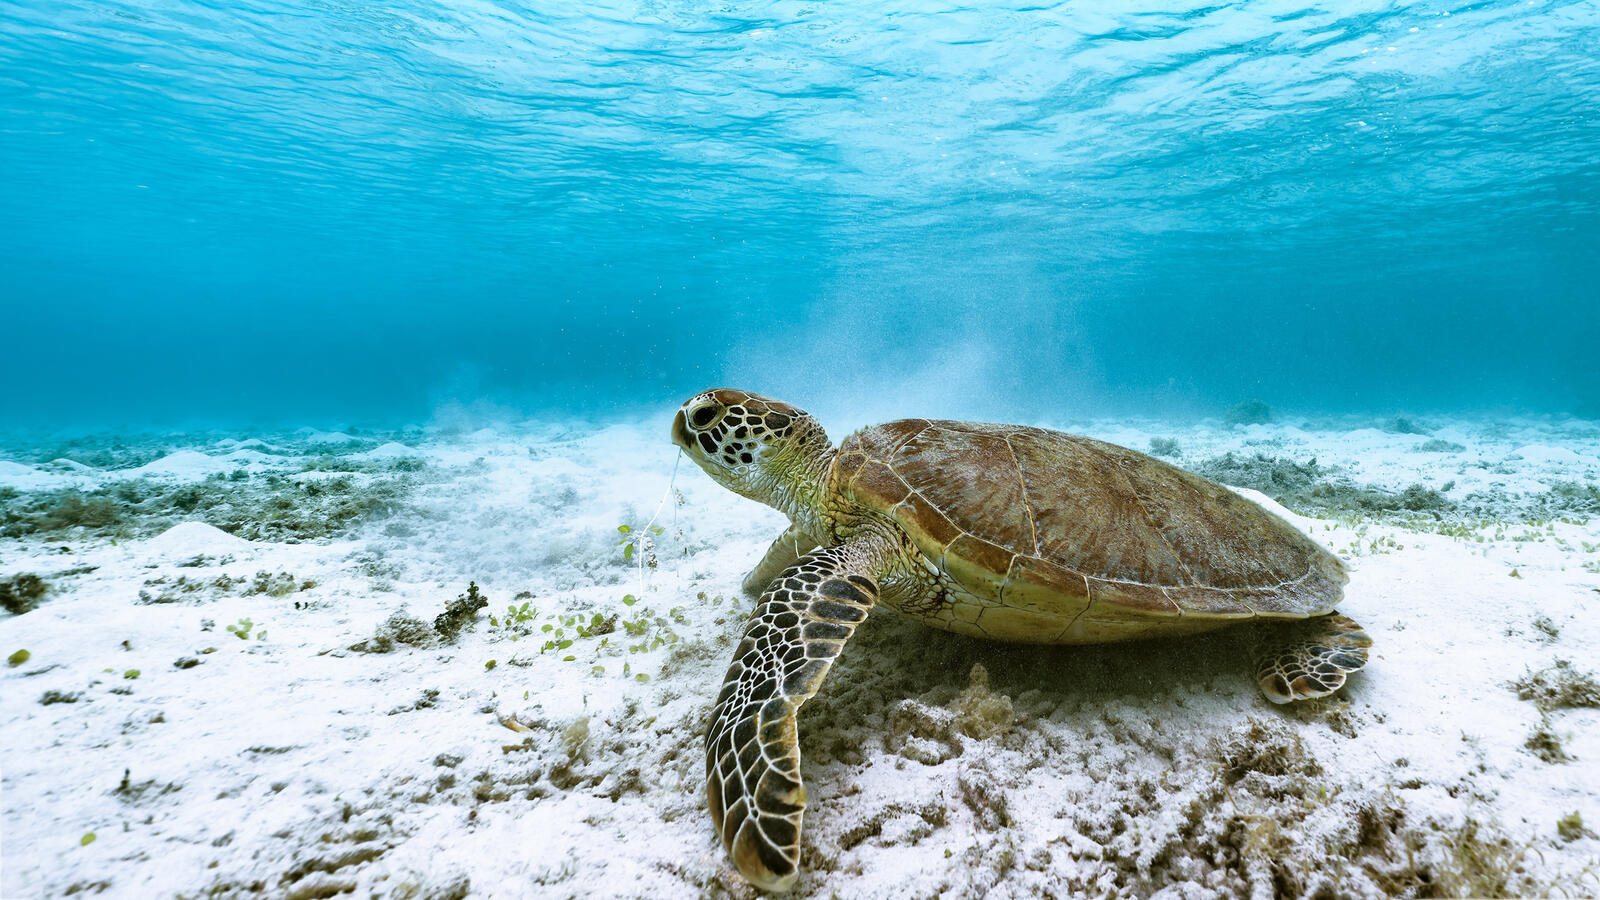 Free photo A sea turtle walks on the sea floor.